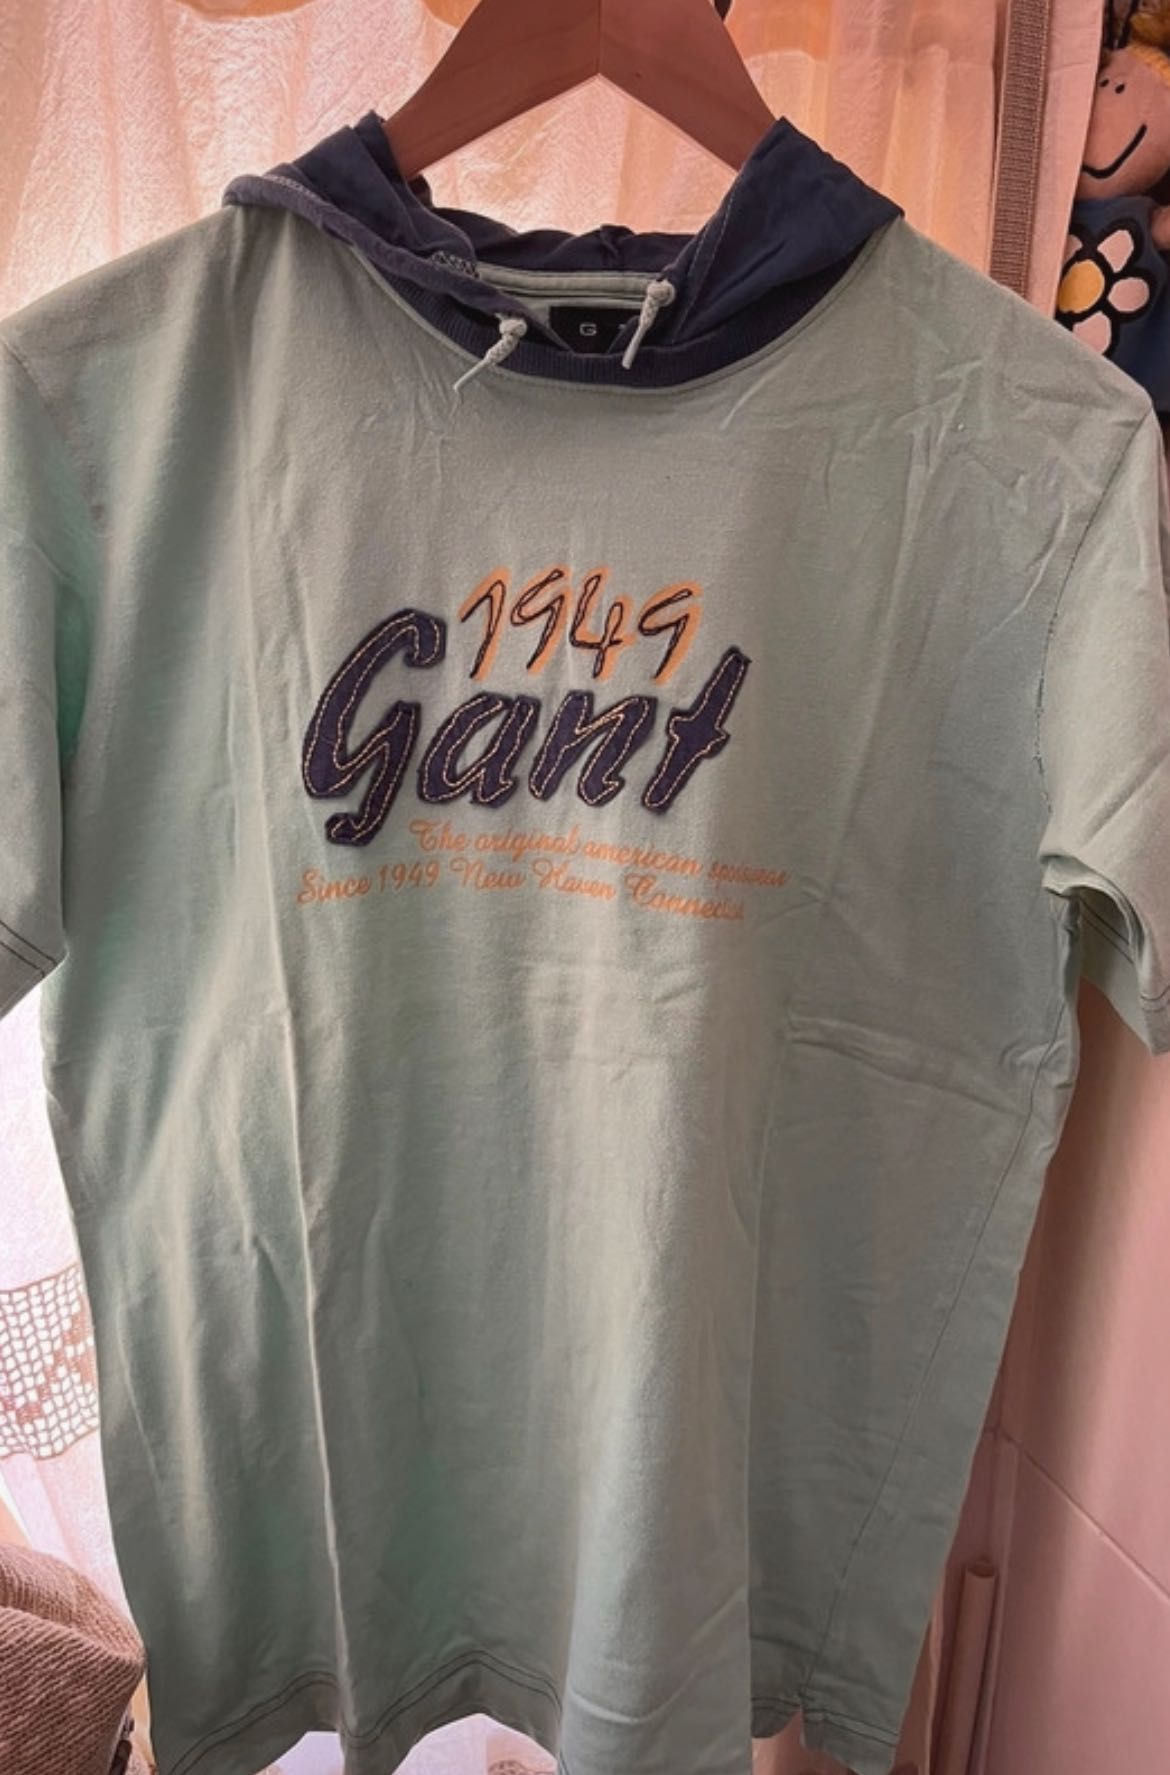 Tshirt Gant com capuz 14 anos / M verde e azul
Manga curta